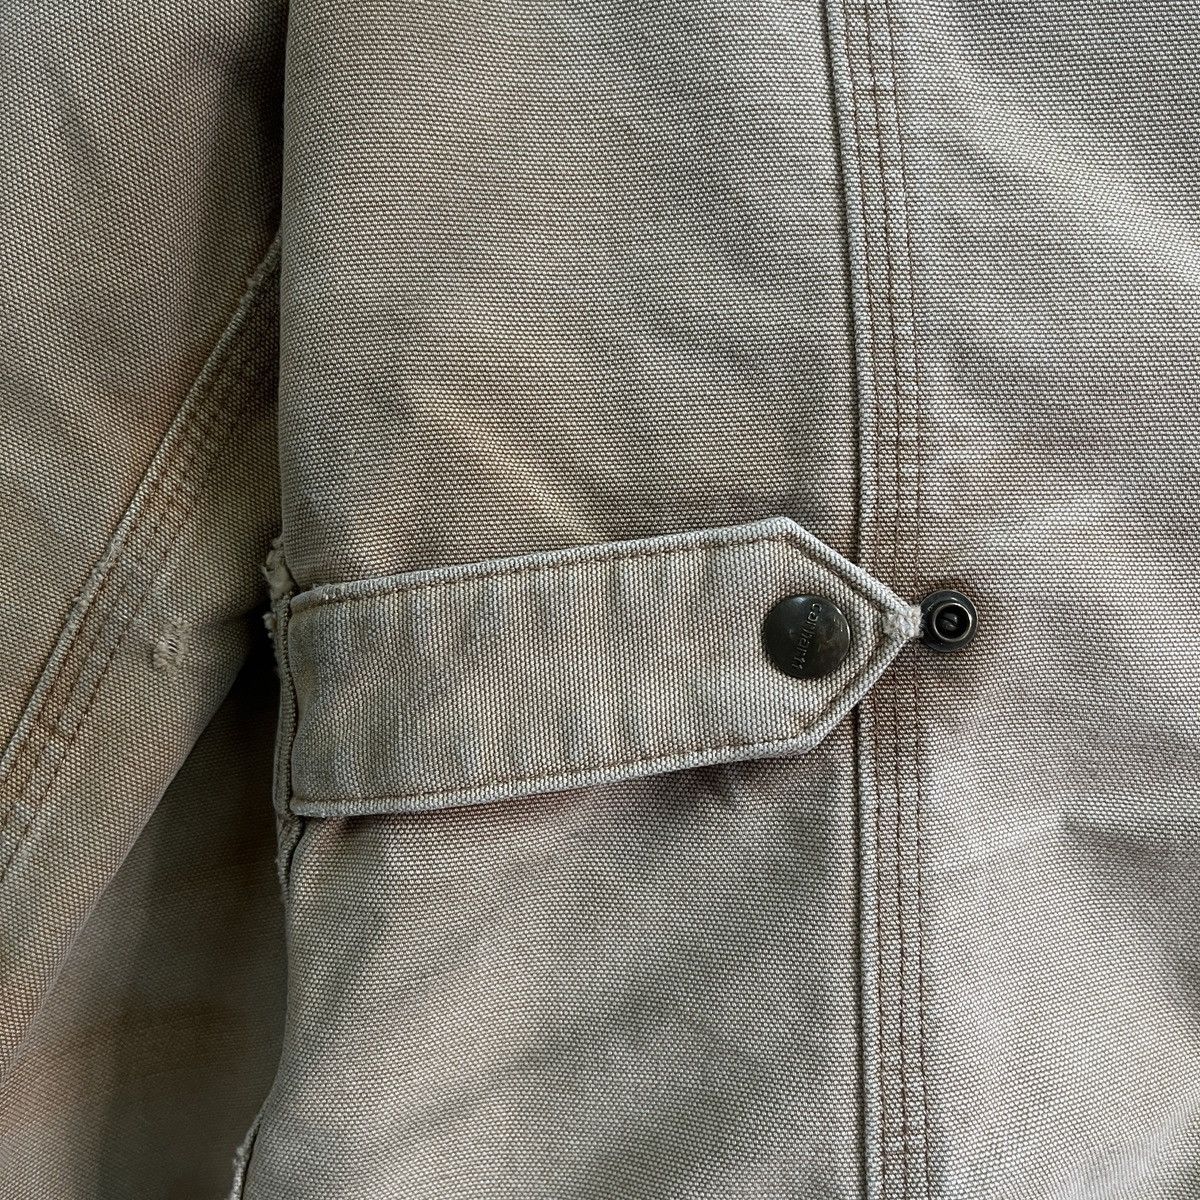 Vintage - Carhartt Blanket Jacket Distressed Workers Denim Jacket - 15